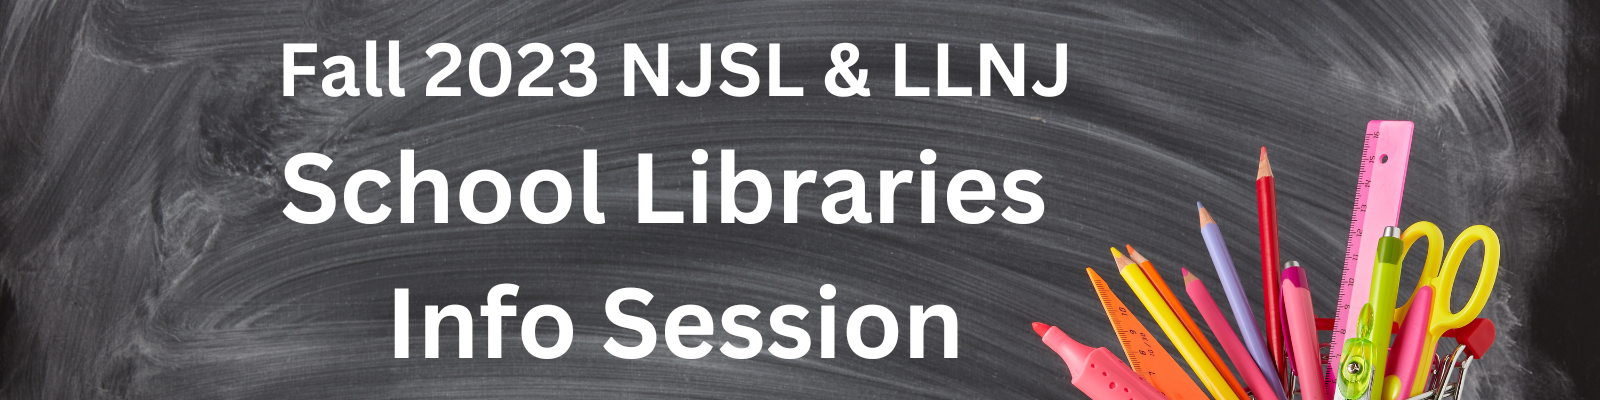 Fall 2023 NJSL & LLNJ School Libraries Info Session